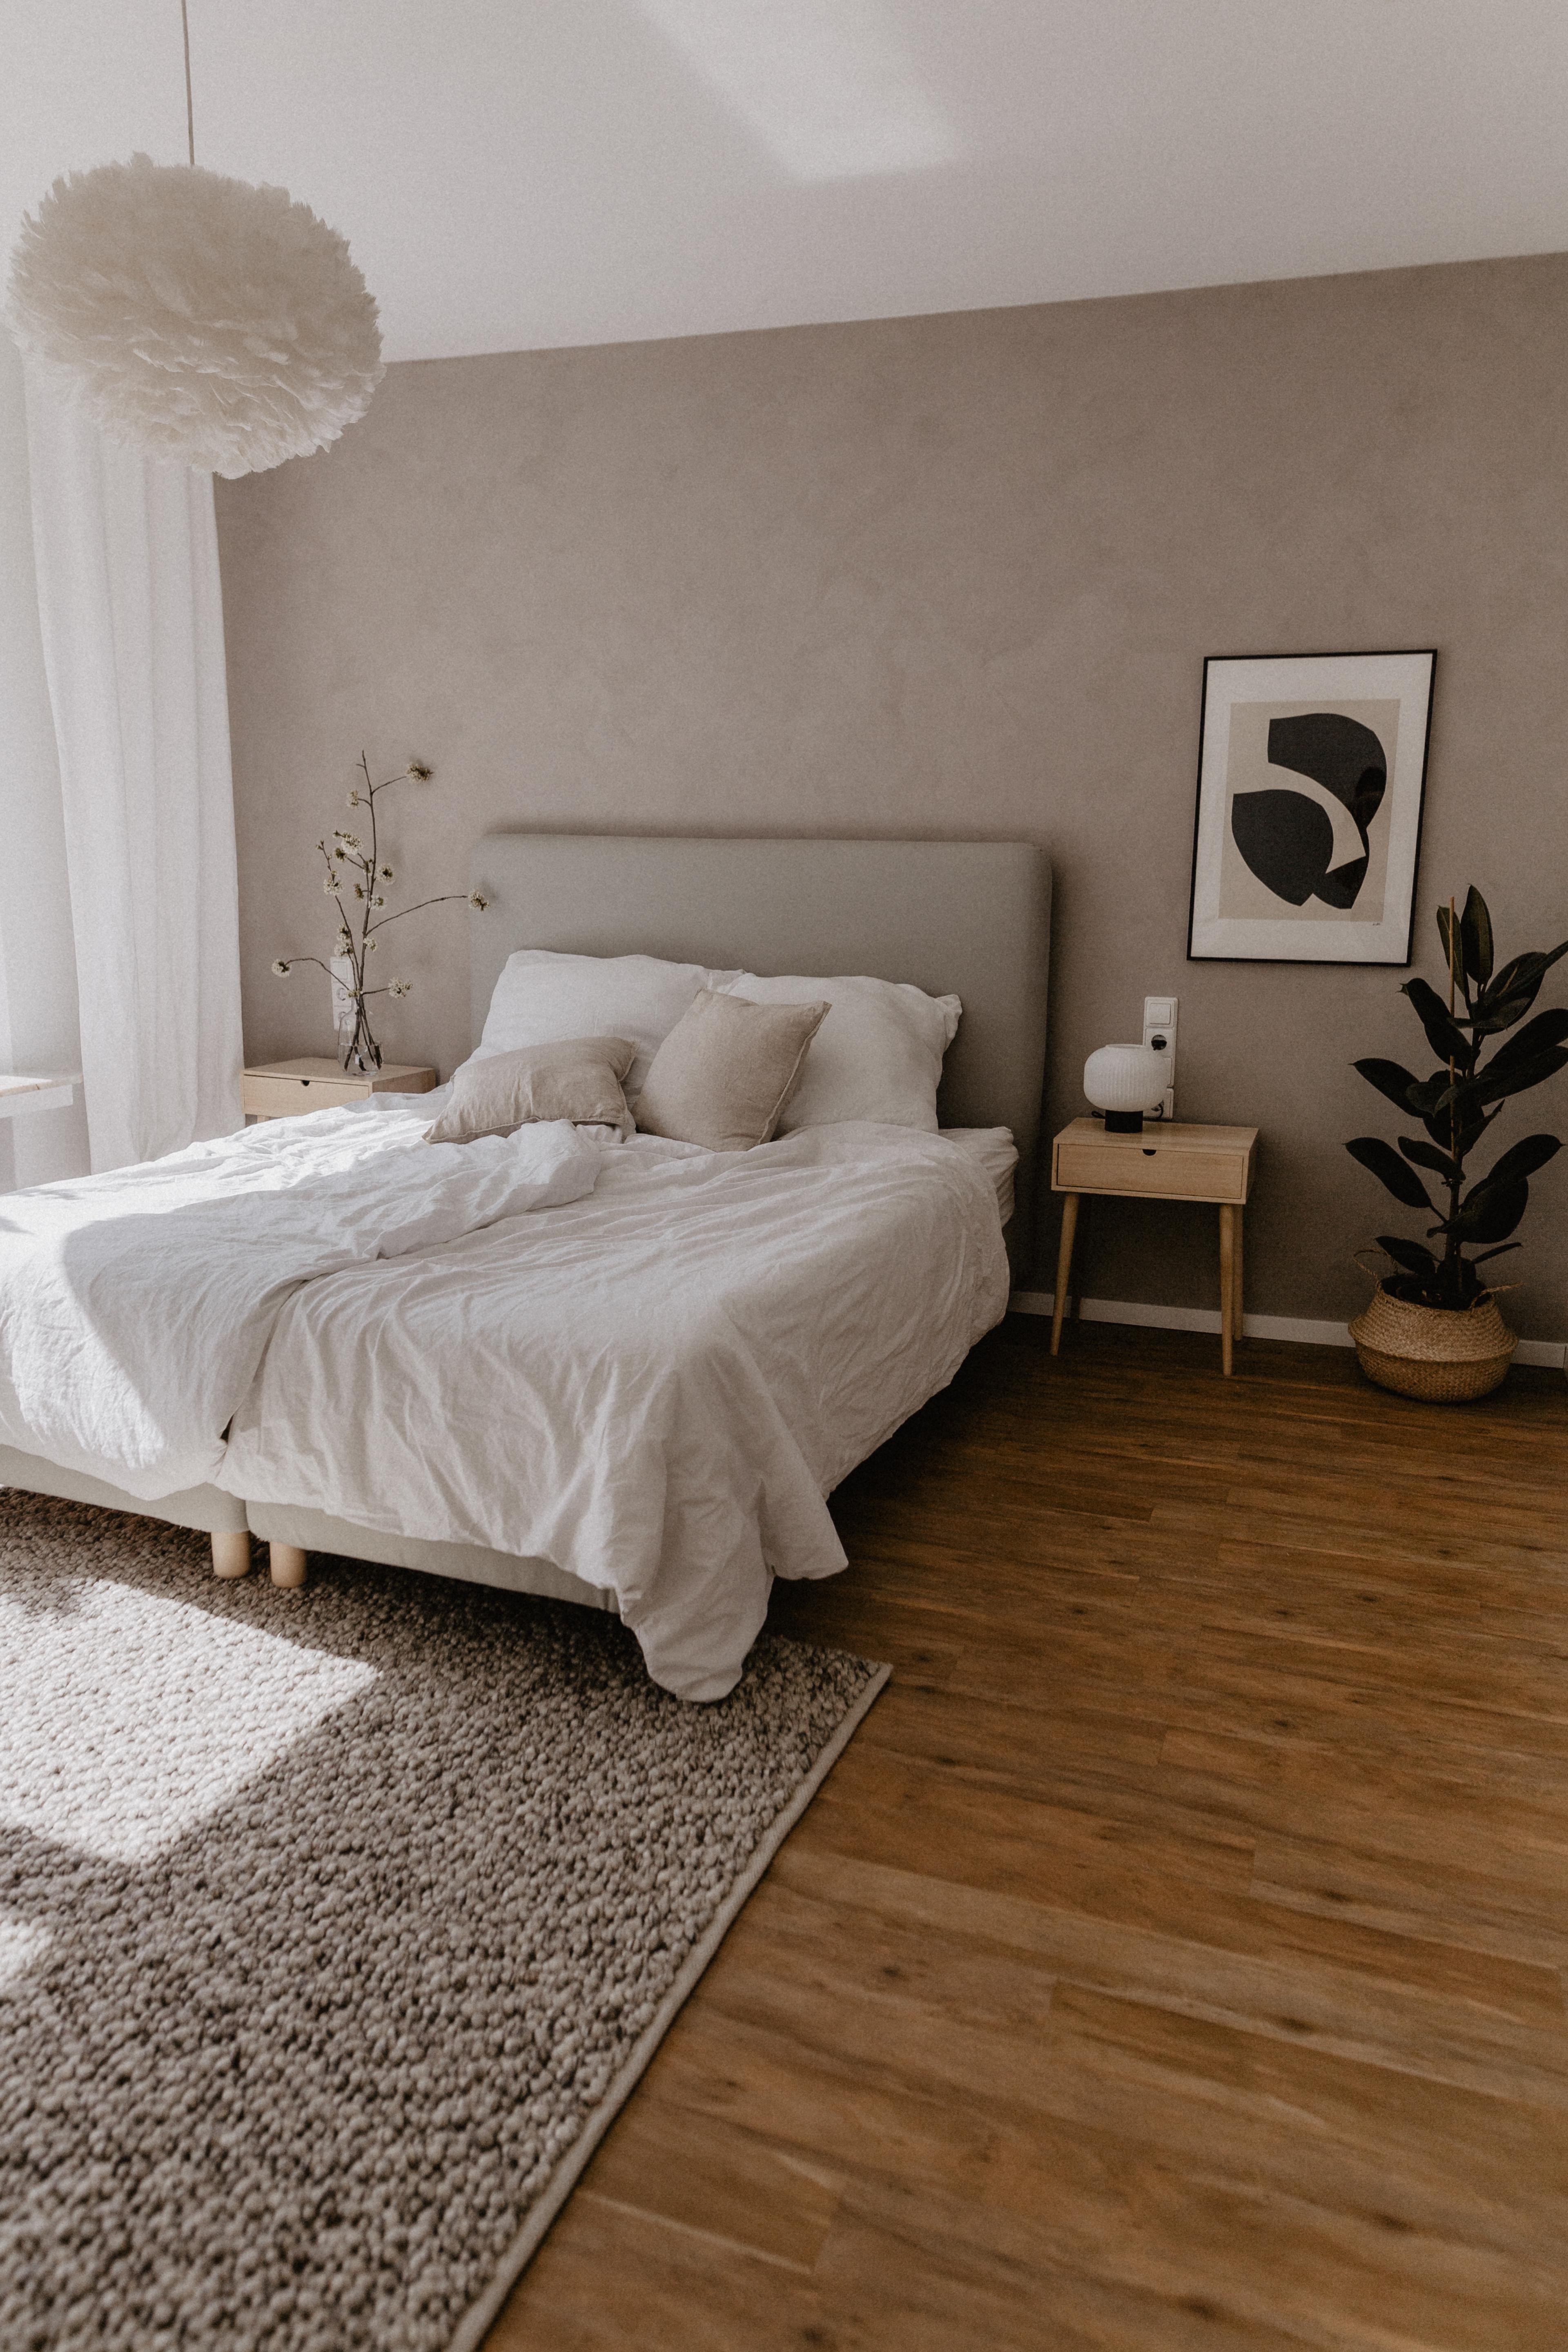 New cozy bedroom look #renovierung #schlafzimmer #interior #gemütlich